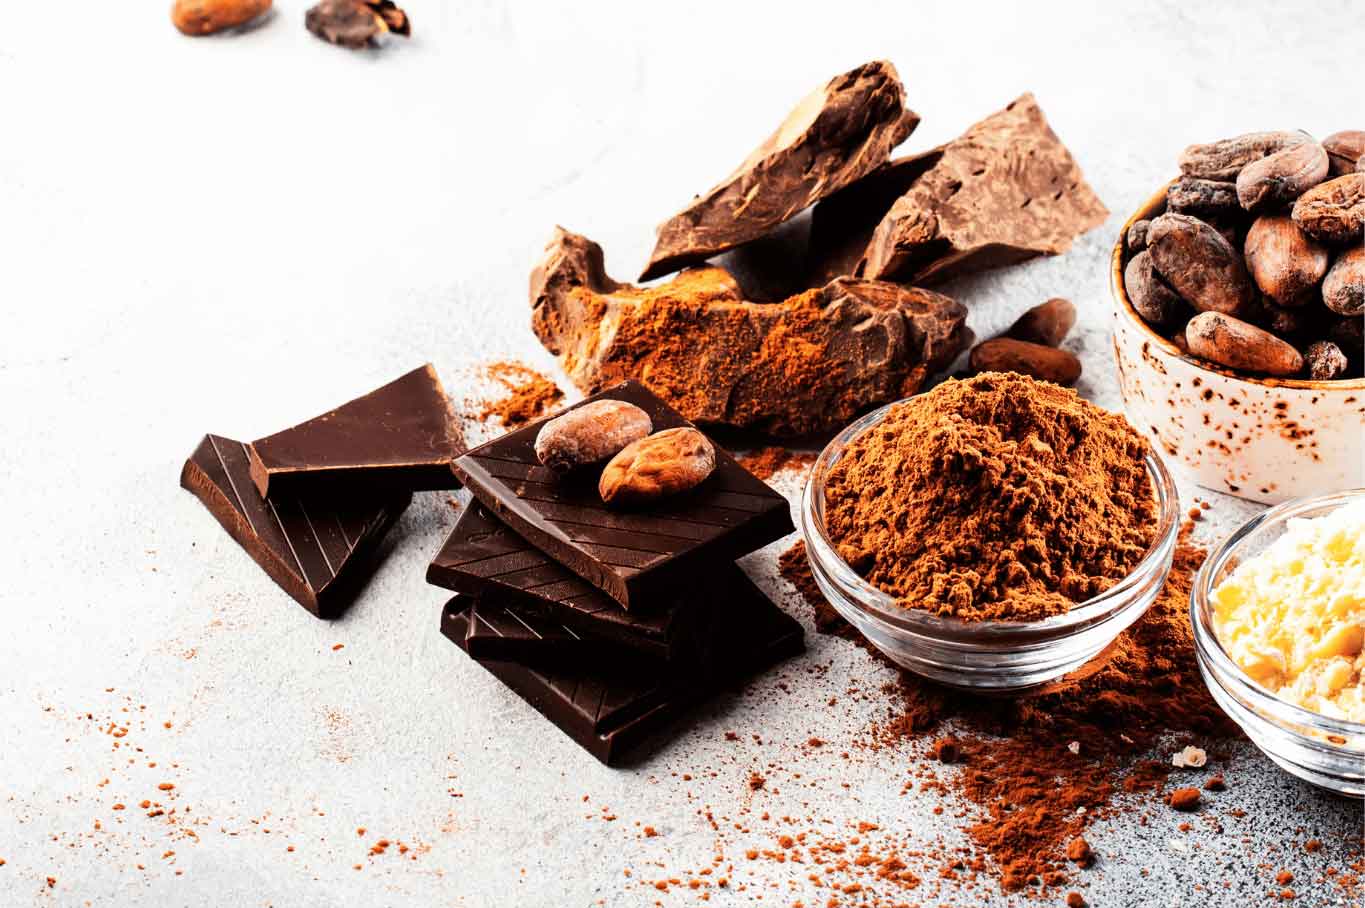 Maridajes sublimes: chocolate cacao, vinos y café en perfecta armonía